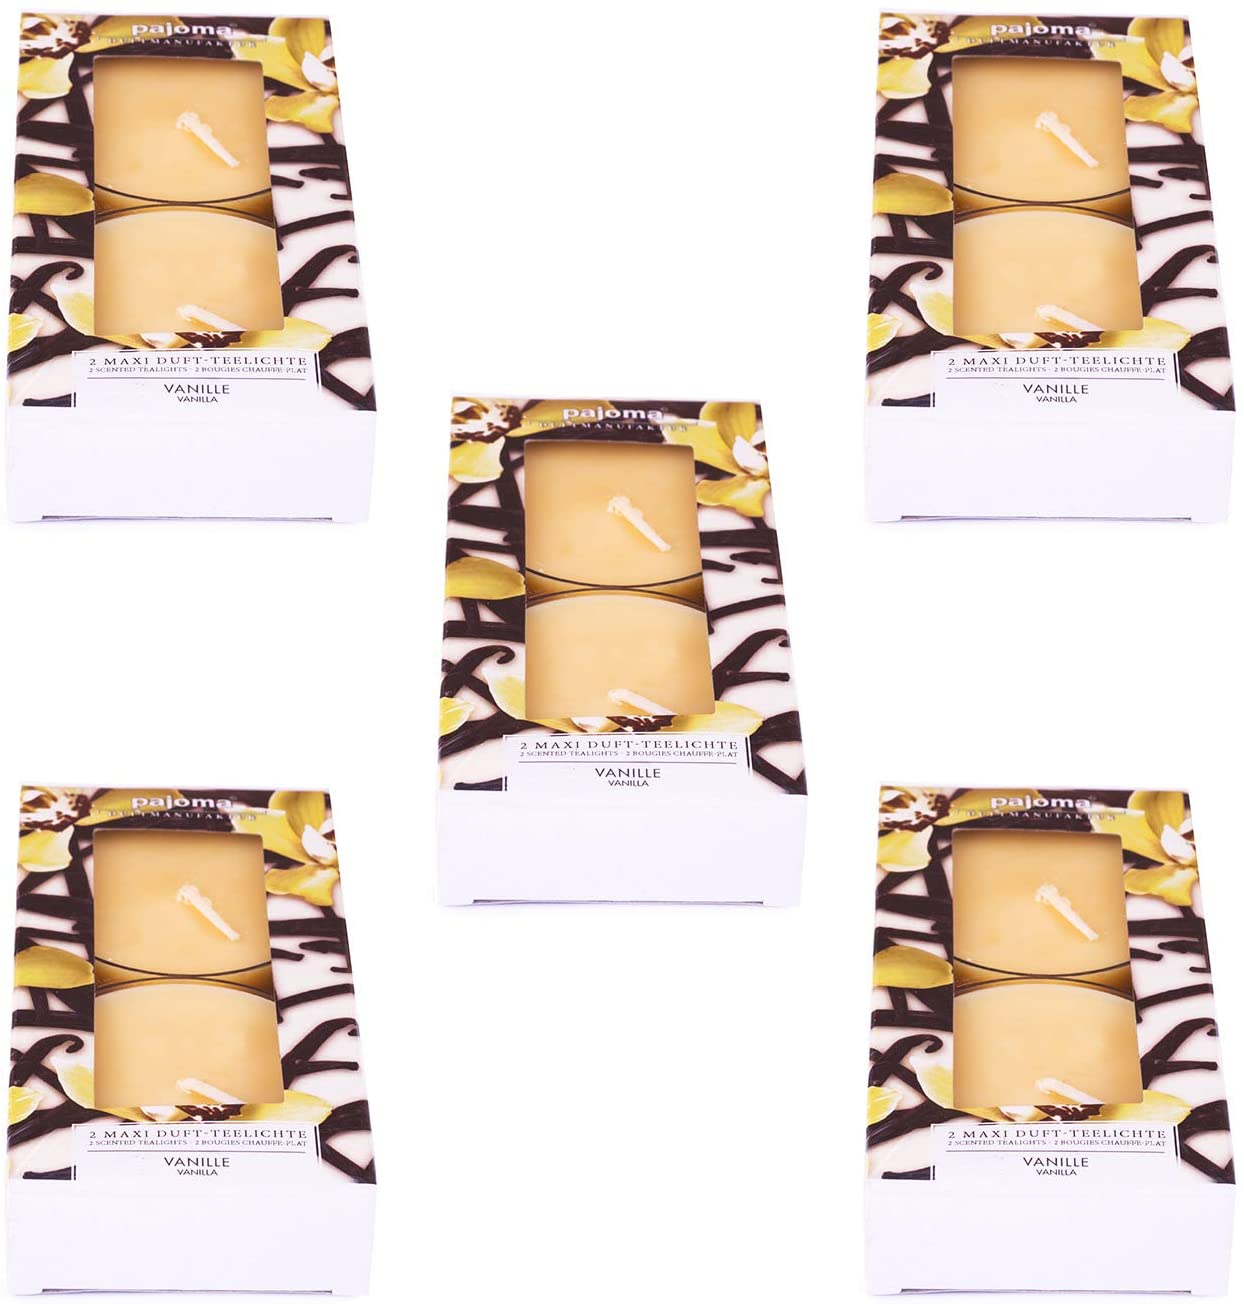 Pajoma Maxi Teelichte Vanille, 10Er Pack (5 X 2 Maxi Duft-Teelichte) In Pol